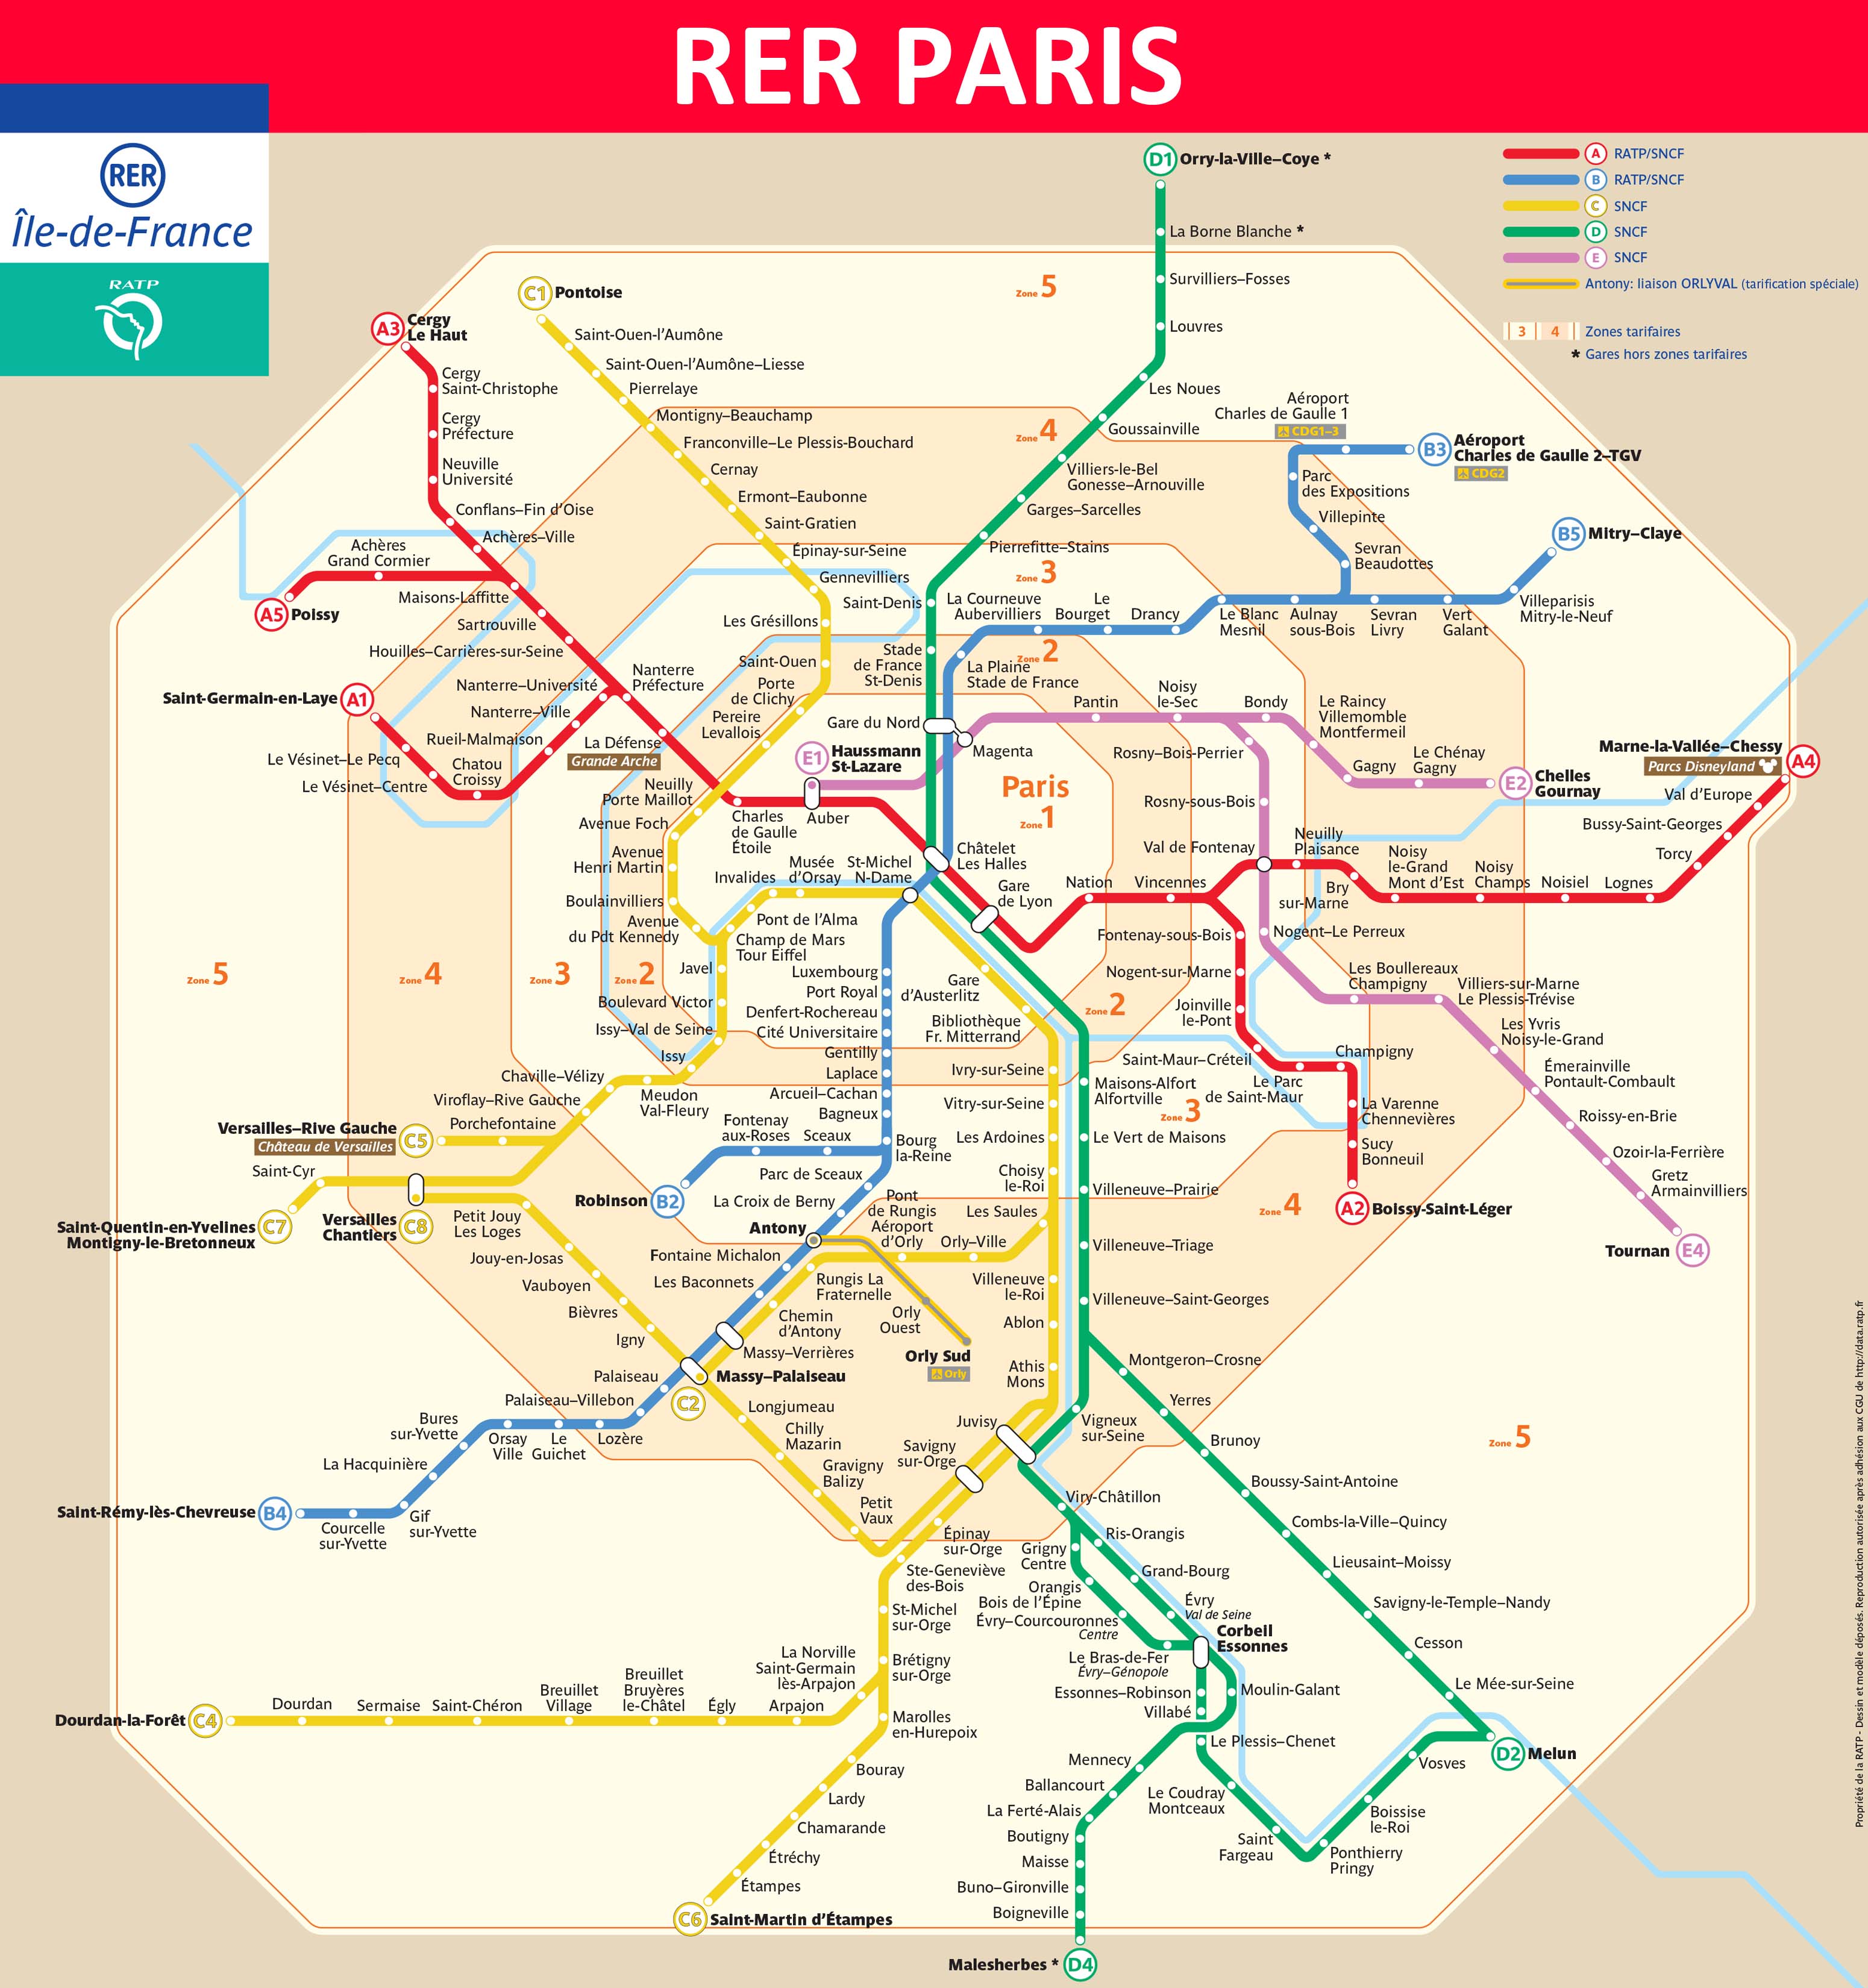 Paris-rer-map.jpg